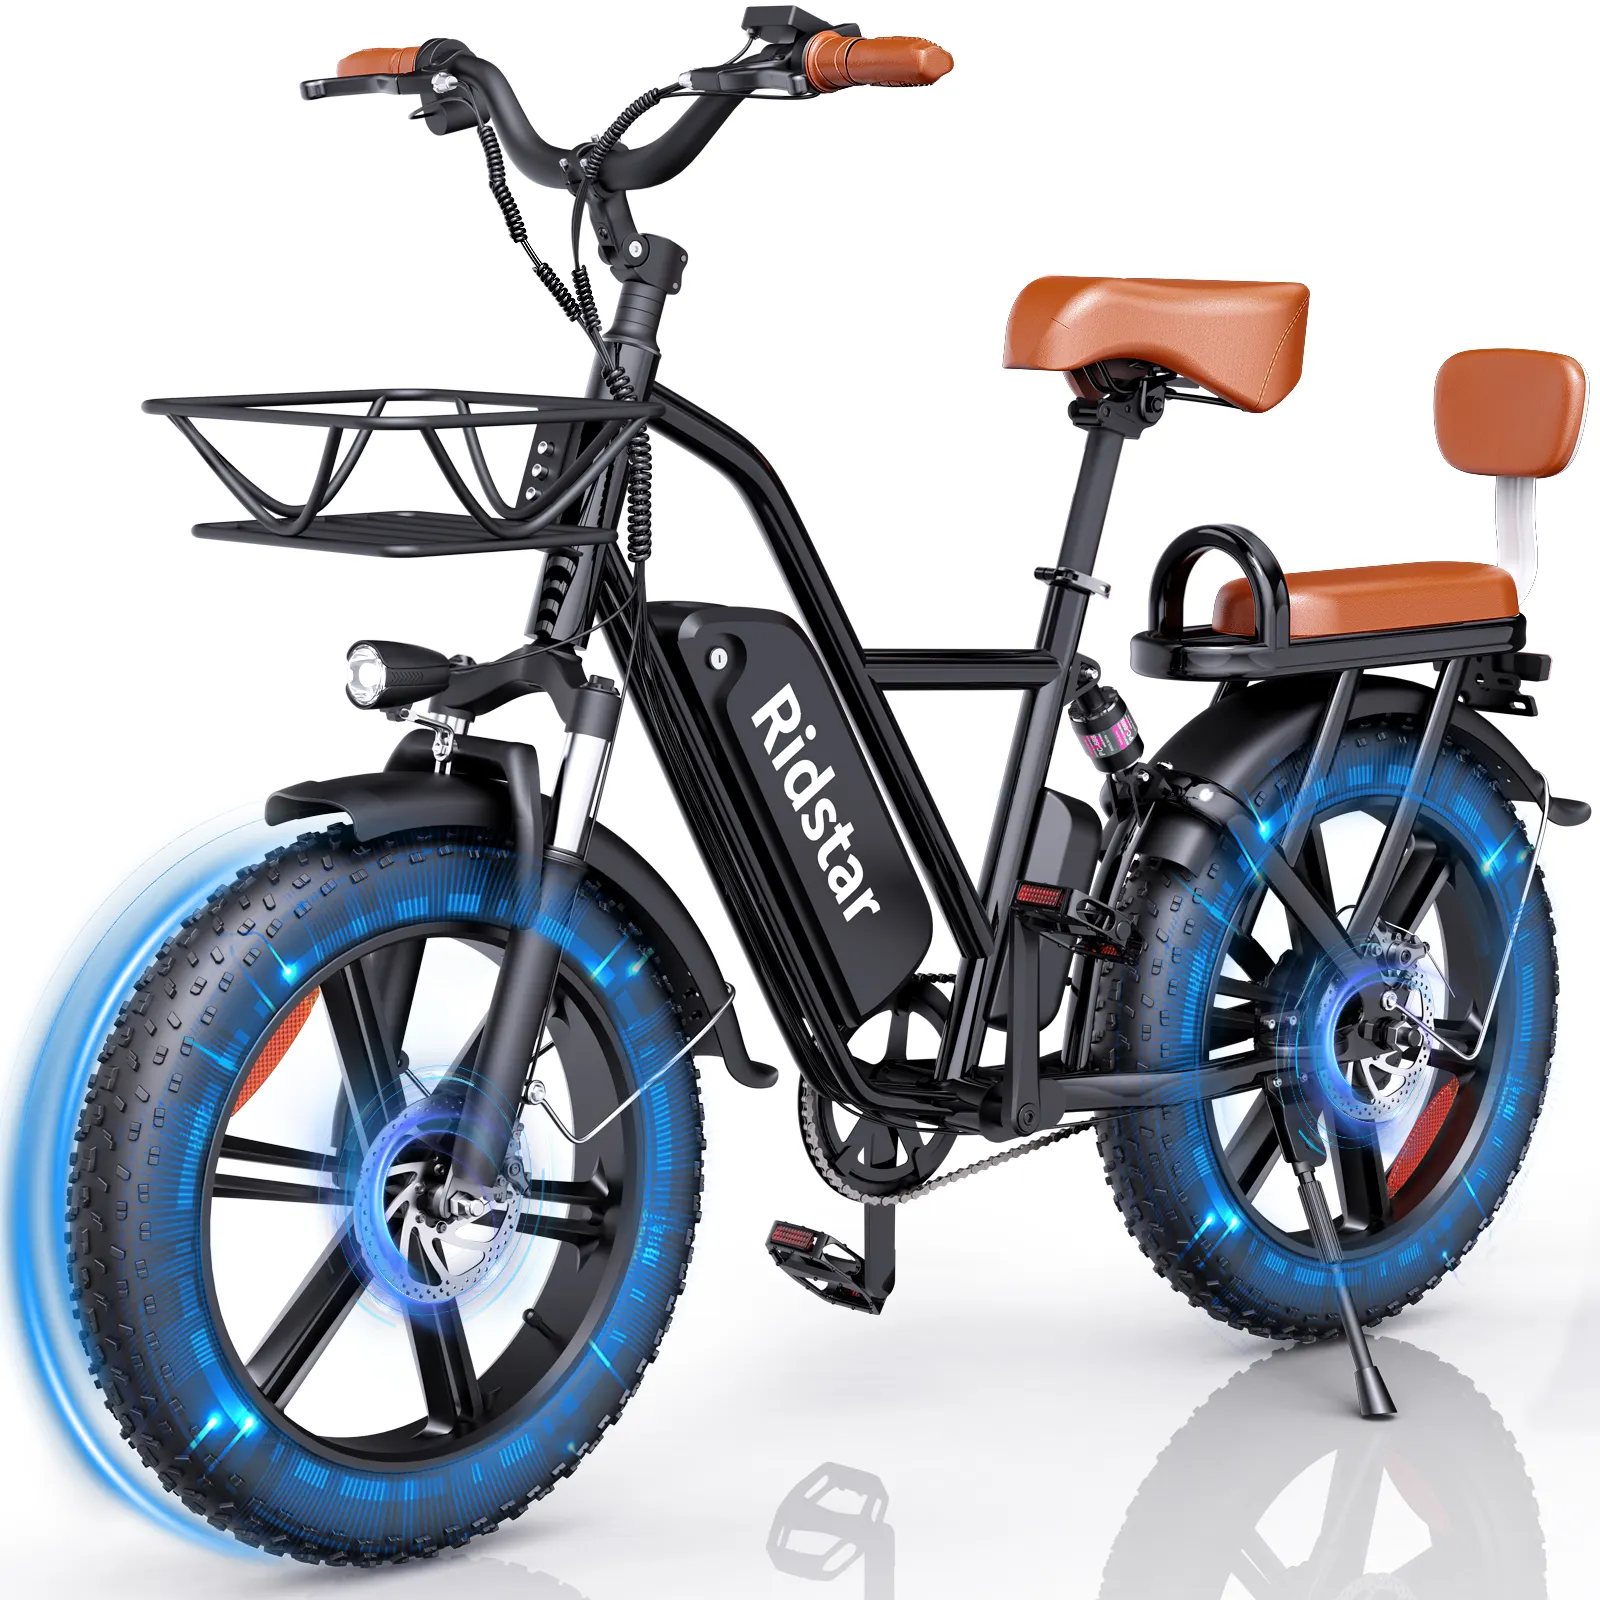 Bicicleta elétrica com pneu grosso, bicicletas elétricas de 20 polegadas, 500 W, 15Ah, com assento infantil, frete grátis